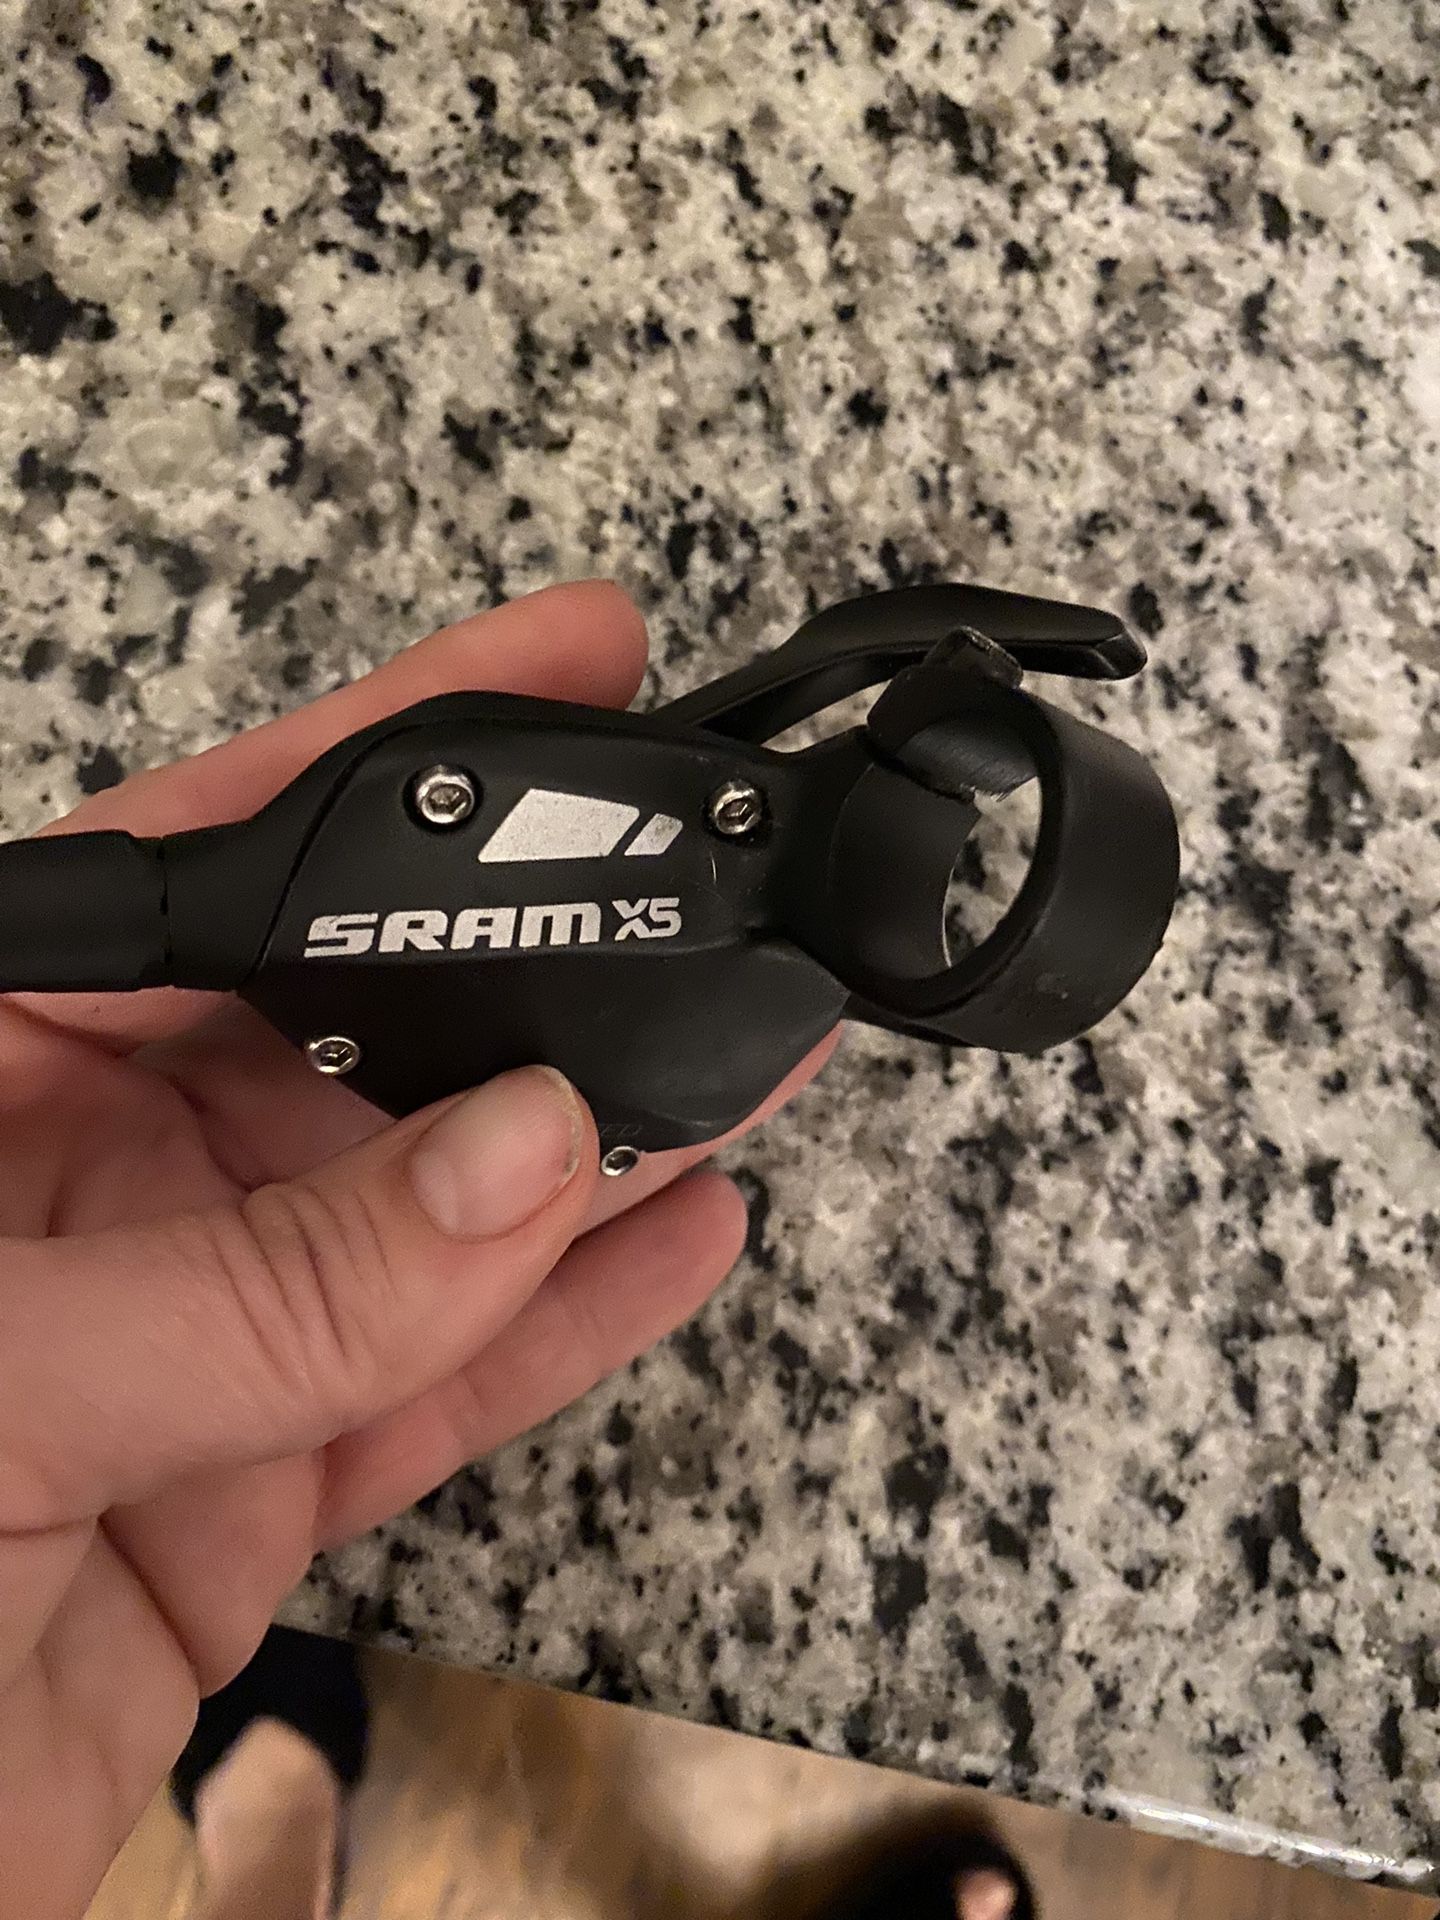 Bike Part - SRAM X5 Trigger 3 Fach Gear Shifter Clamp $5